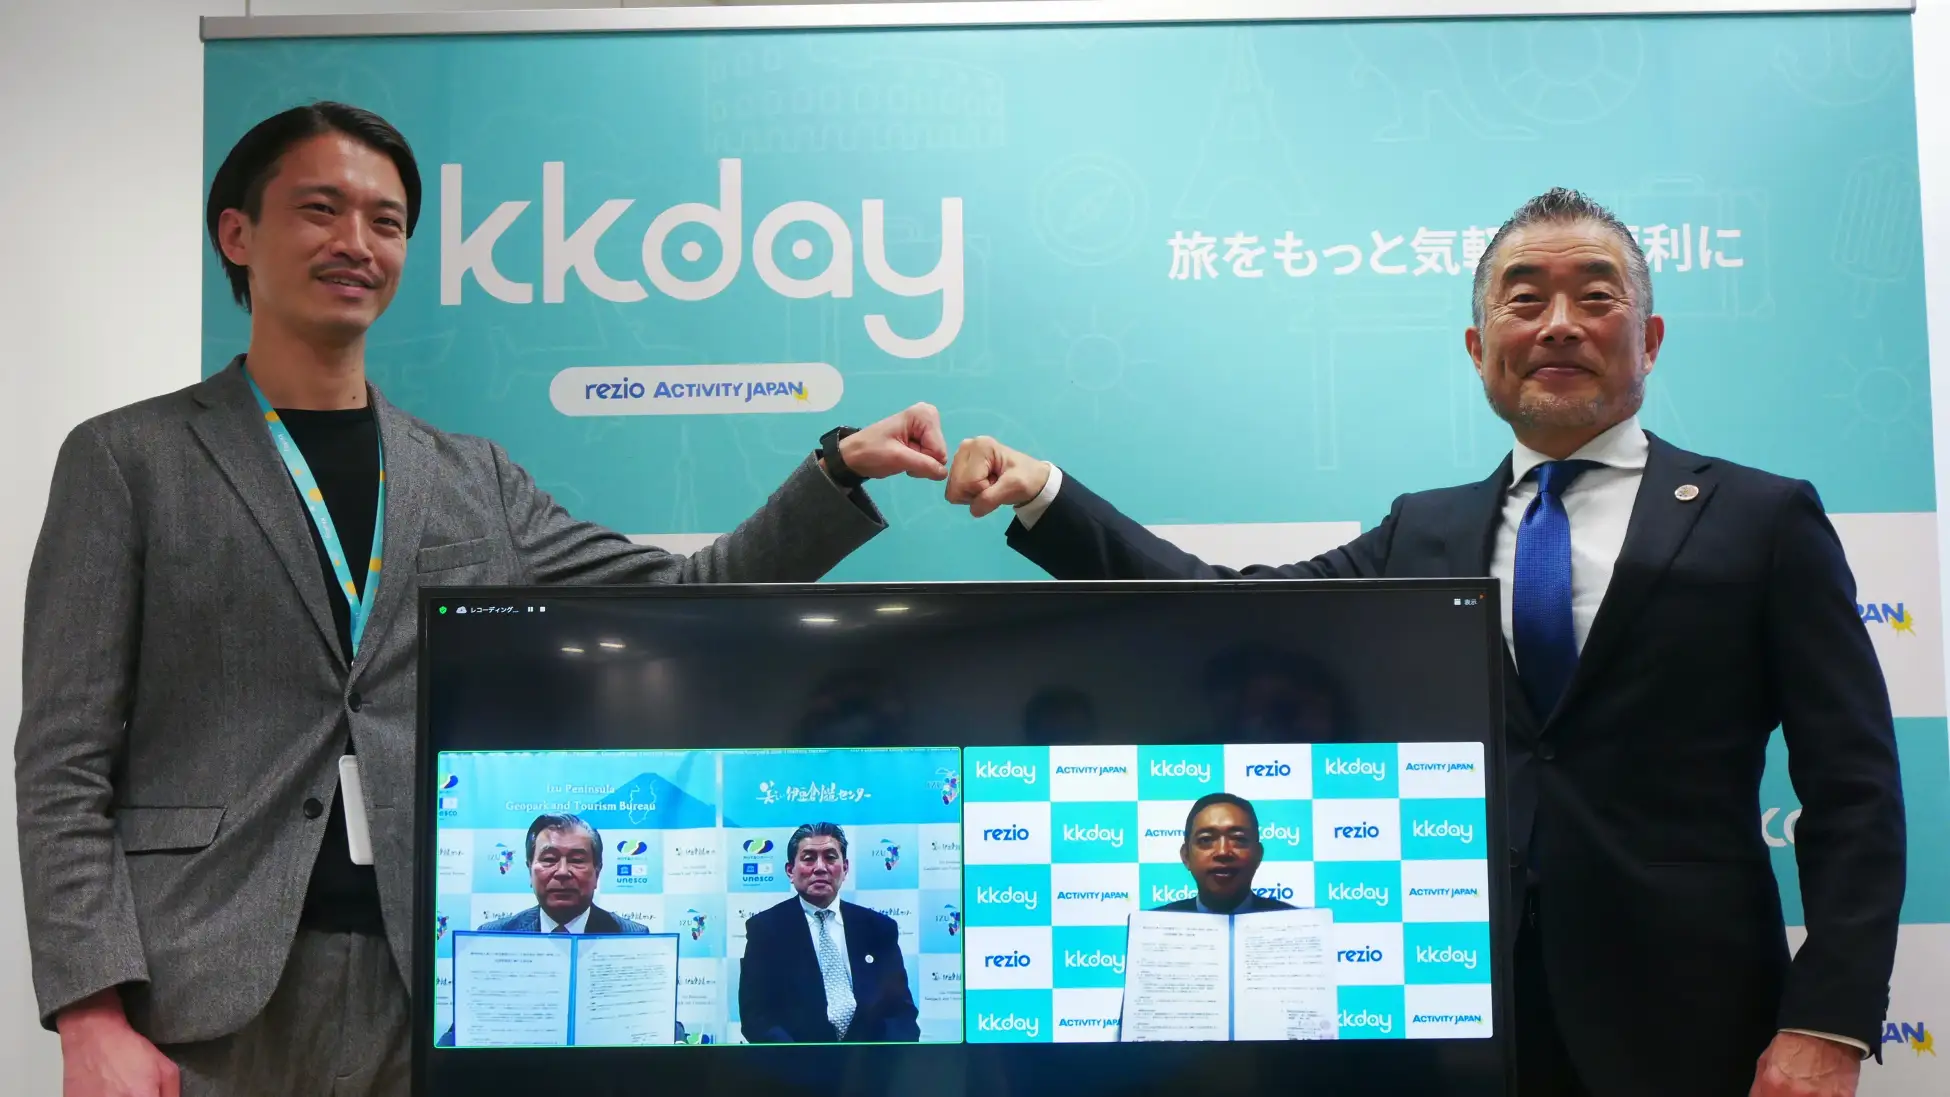 静岡新聞にて、KKdayと「美しい伊豆」の連携協定に関する記事が掲載されました